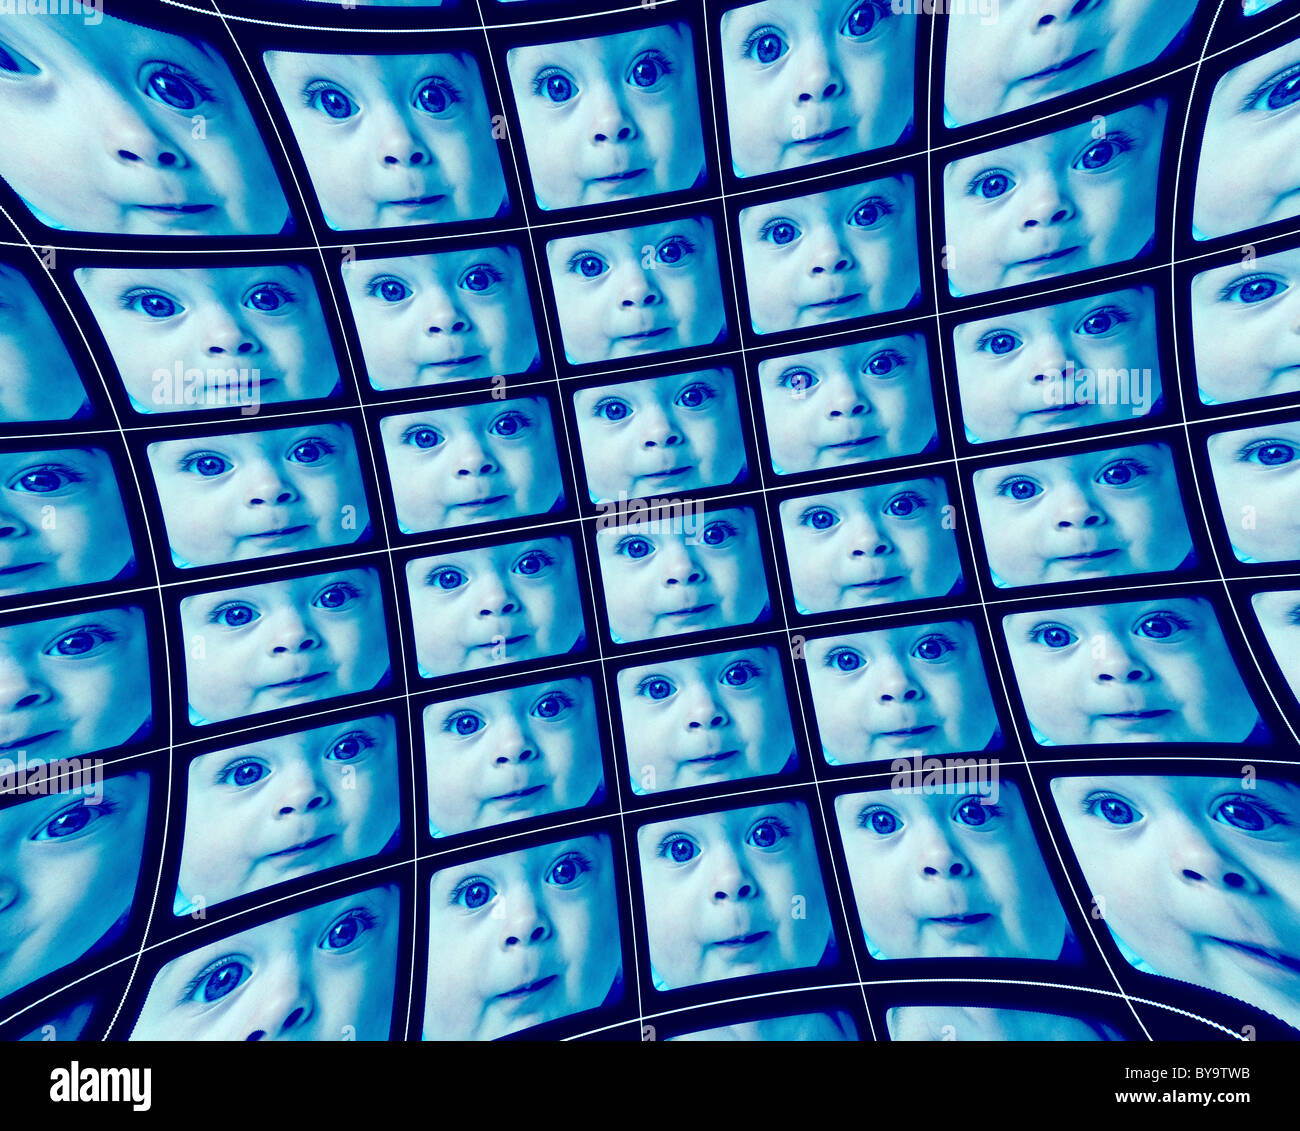 Verzerrte blau video-Bildschirme zeigen die gleichen Gesichter eines Babys Stockfoto